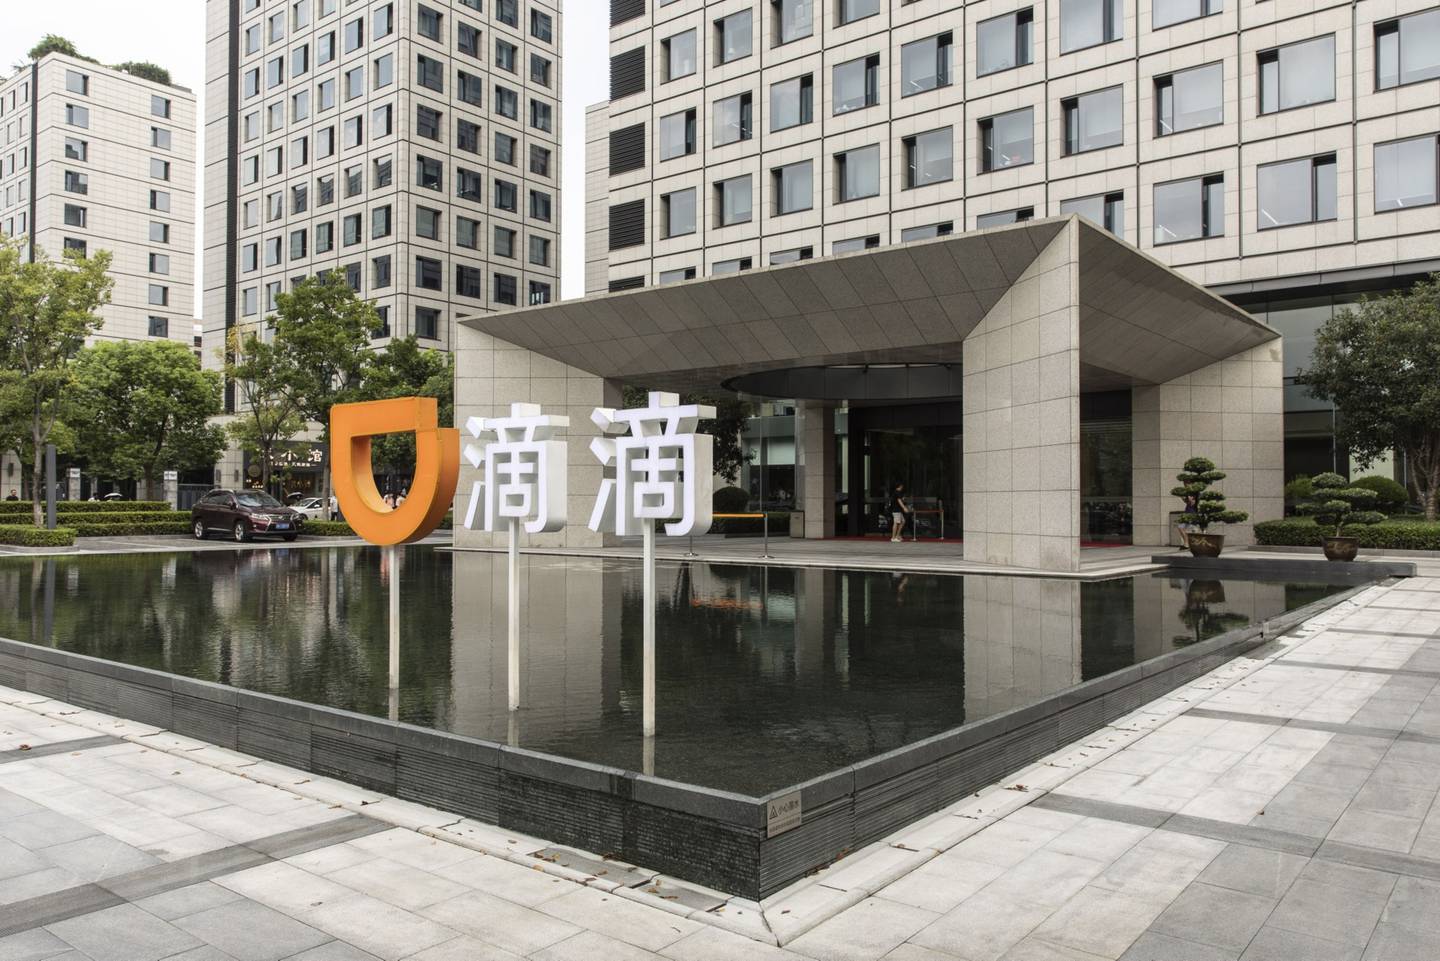 Las oficinas de Didi en Hangzhou, China.